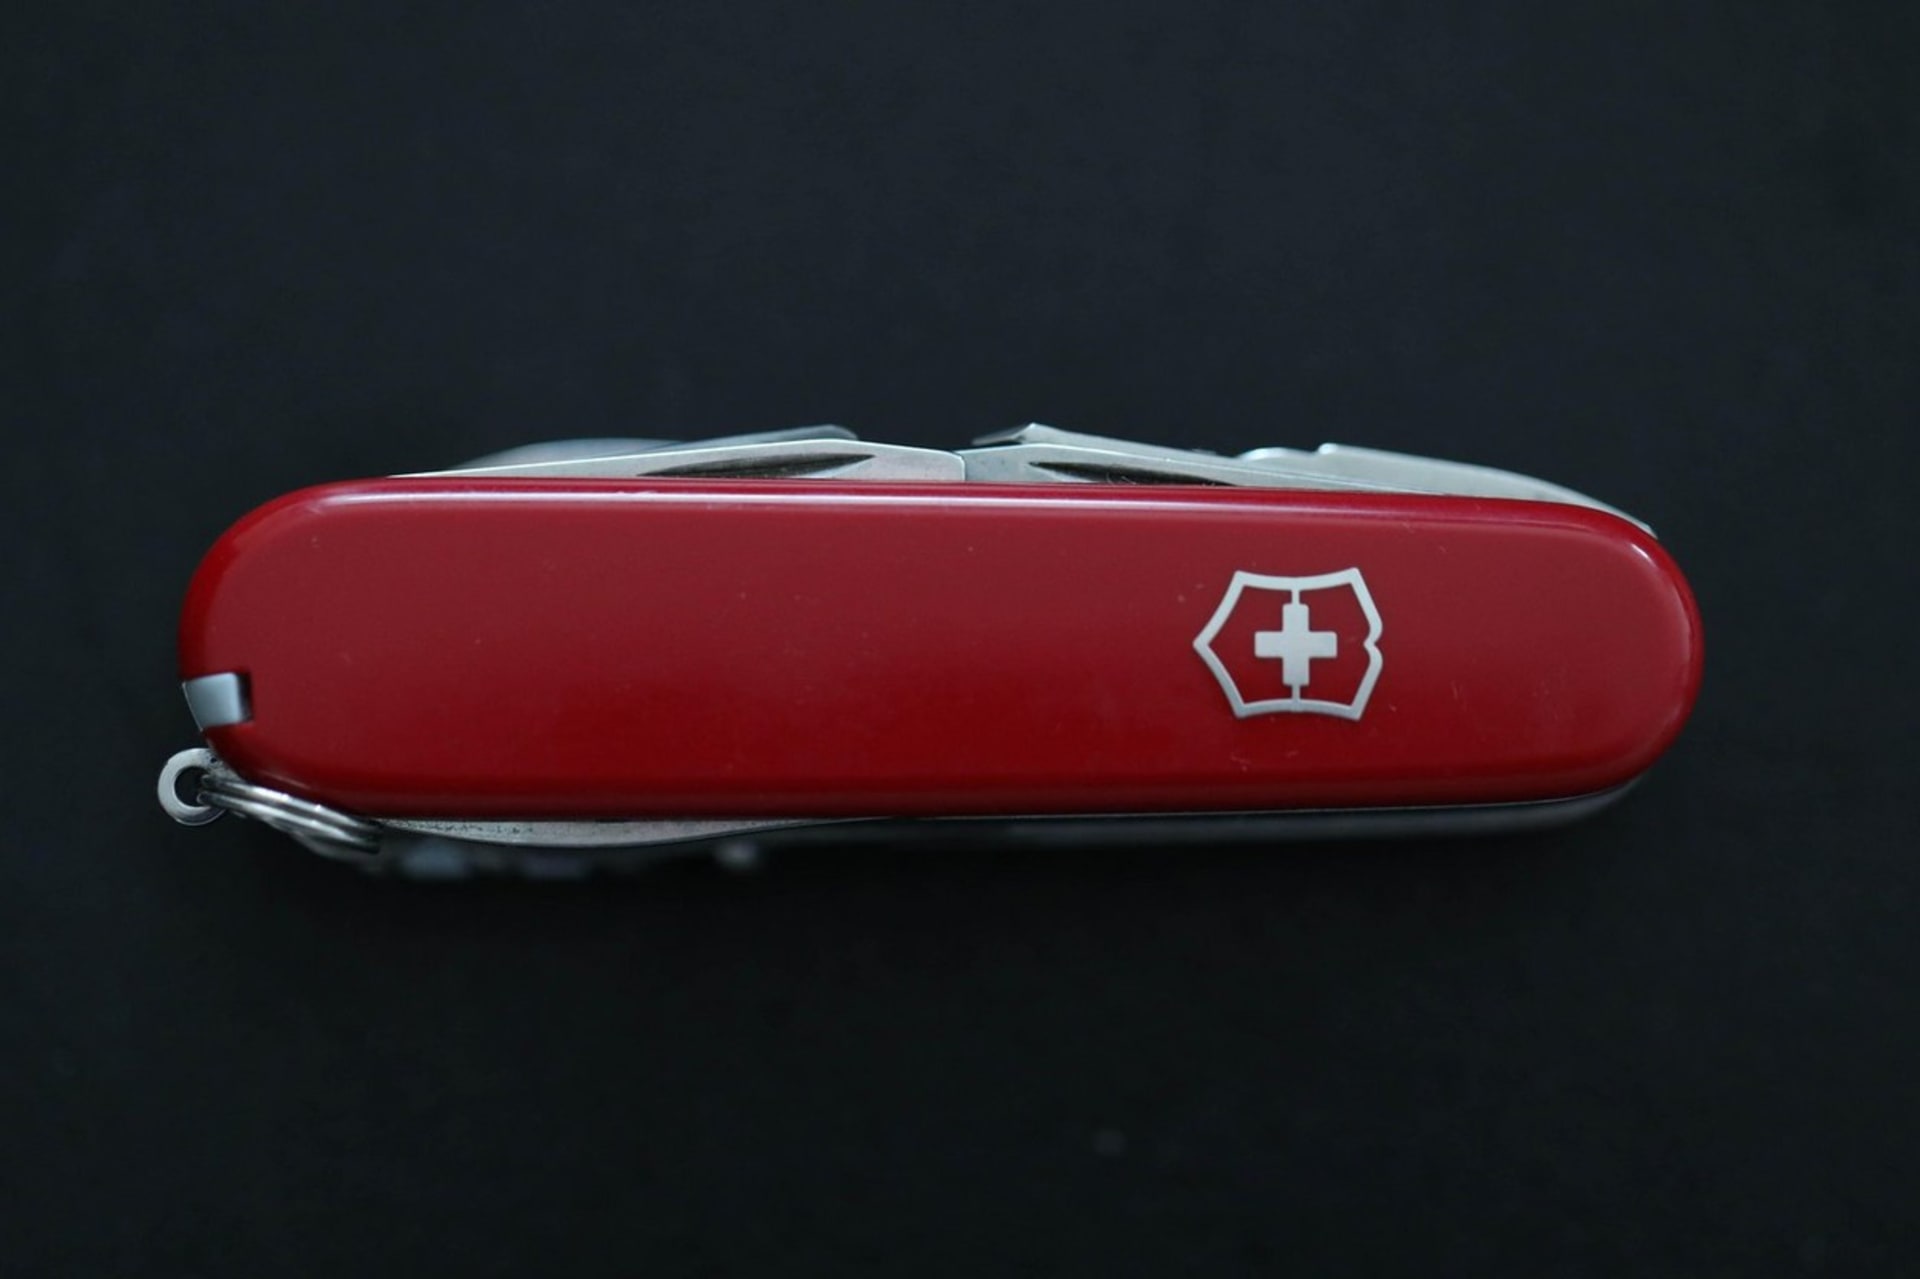 Klasika od Victorinoxu. Nejznámější model švýcarského armádního kapesního nože v červené barvě s bílým křížem. 